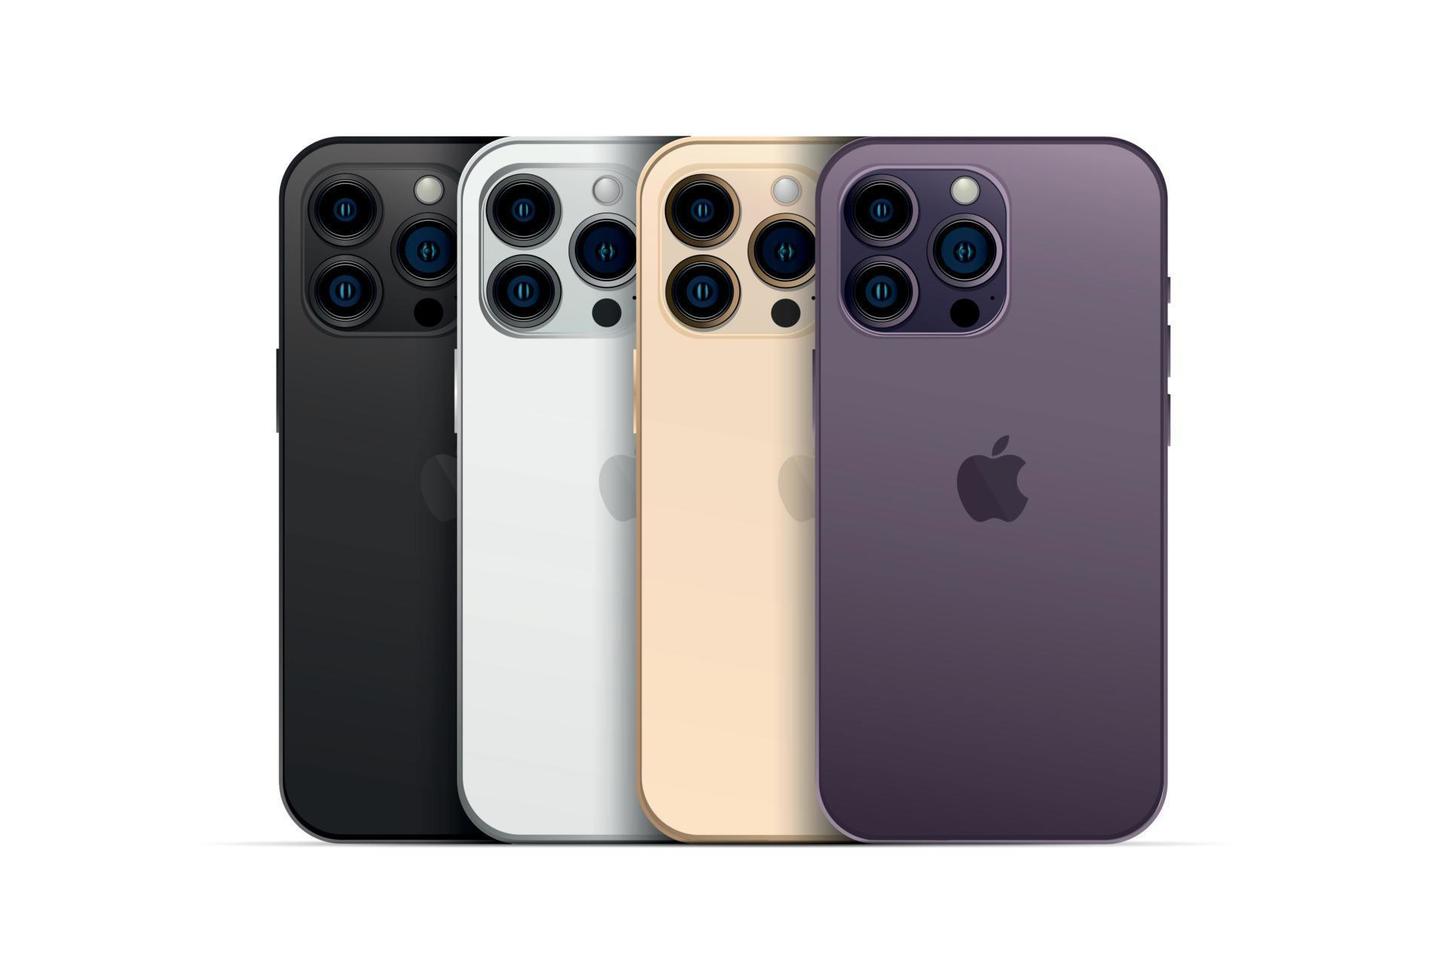 novo apple iphone 14 pro, gadget de smartphone moderno, conjunto de 4 peças novas cores originais - vetor